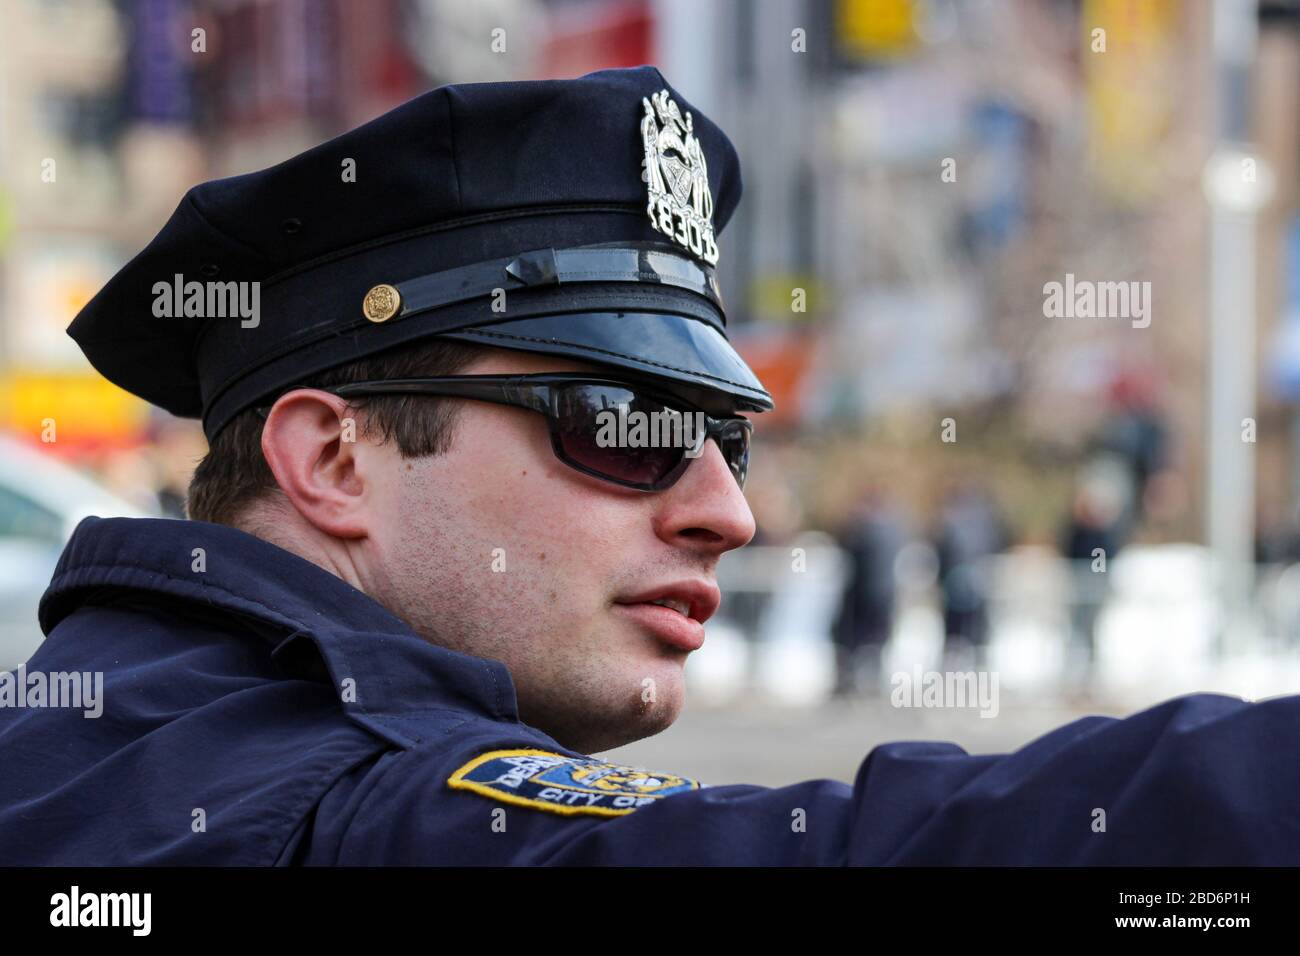 Polizeibeamte der NYPD mit durchgesickerten Verschlusskappen und Sonnenbrillen, die auf Directios in Manhattan, New York City, Vereinigte Staaten von Amerika zeigen Stockfoto